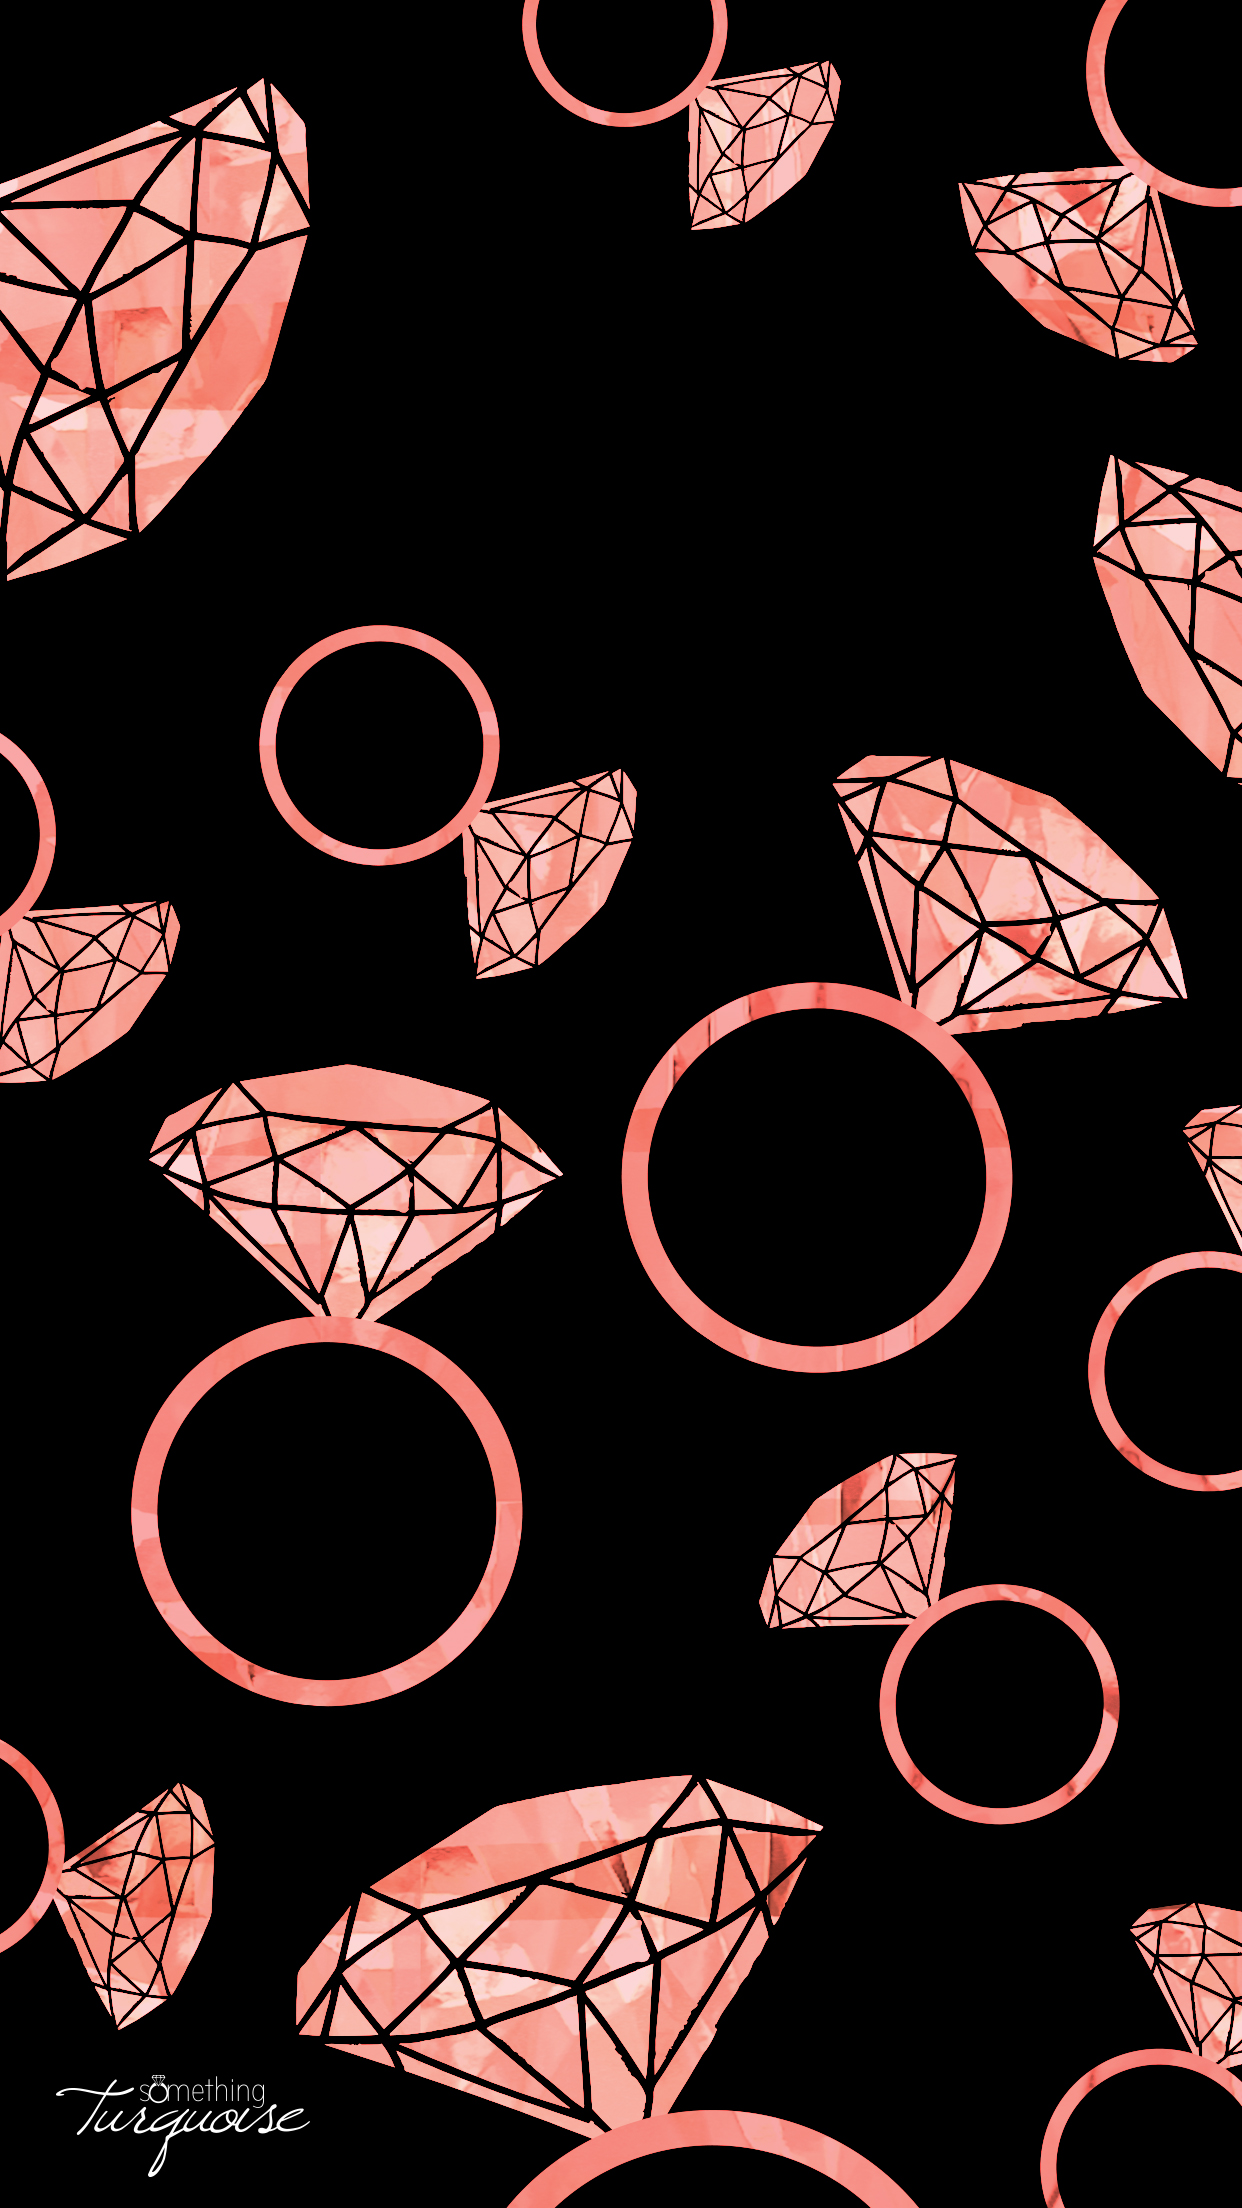 FREE pink diamond ring iPhone wallpaper!